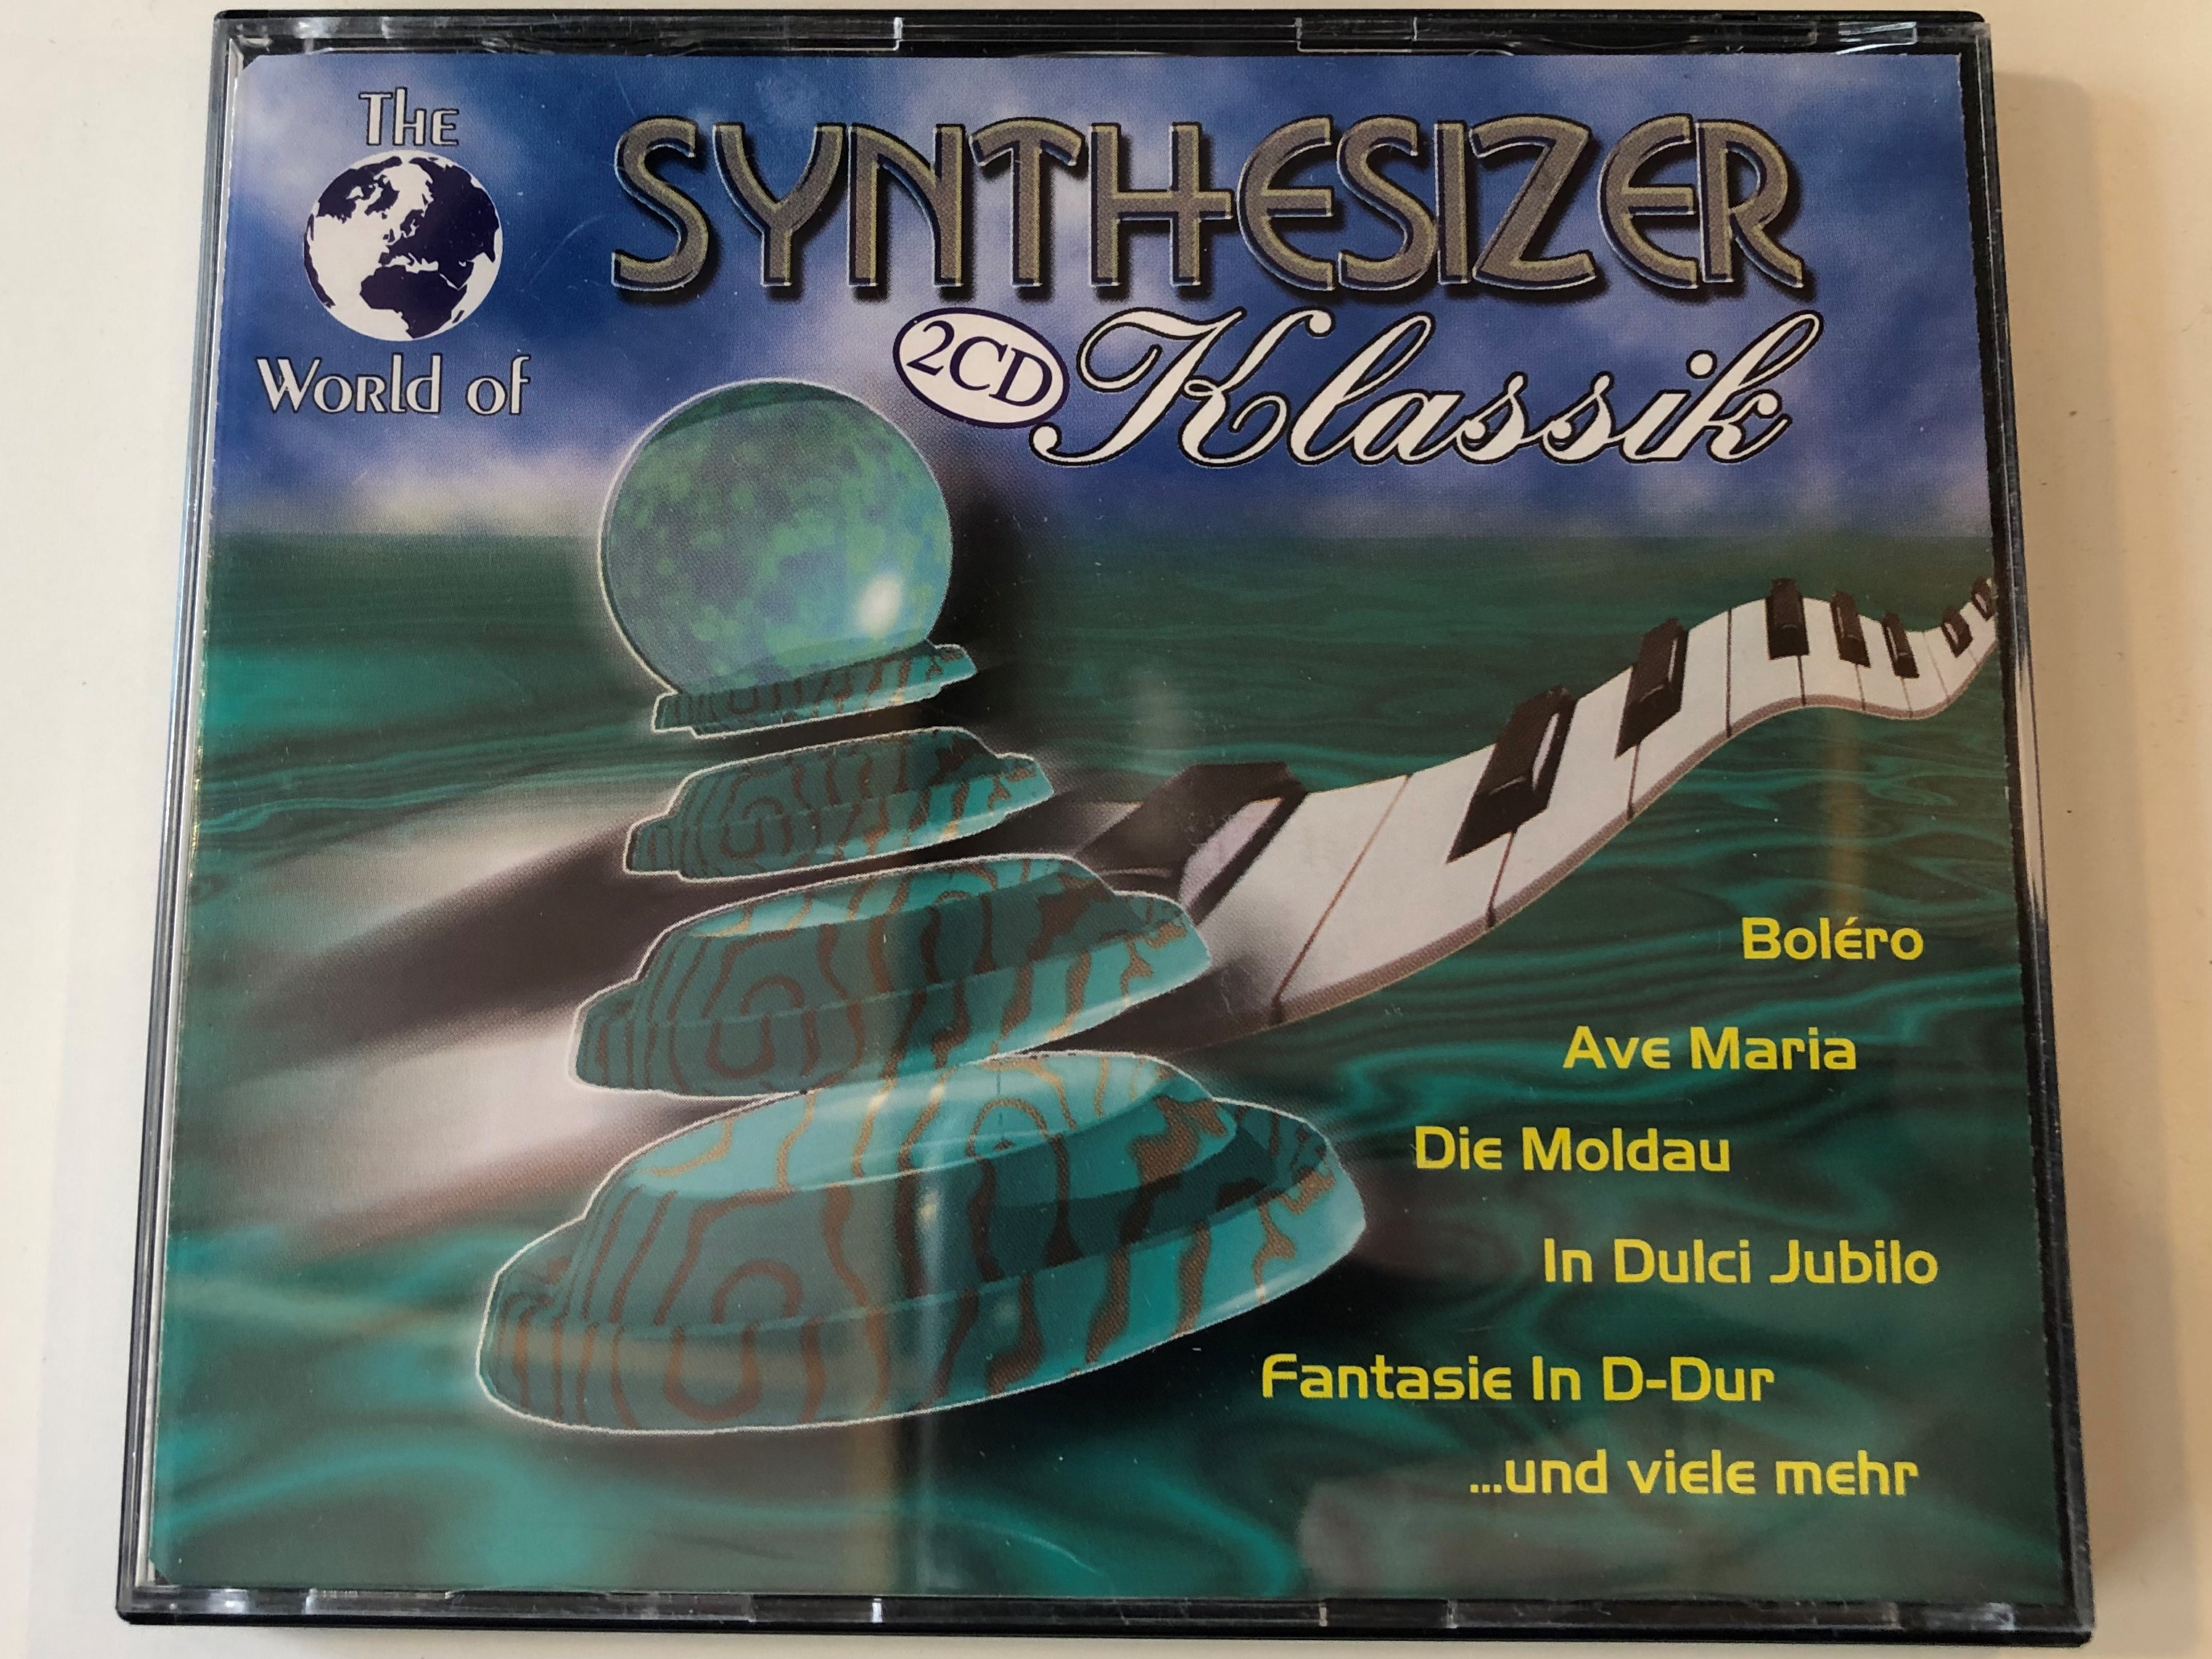 the-world-of-synthesizer-klassik-bolero-ave-maria-die-moldau-in-dulci-jubilo-fantasie-in-d-dur-...und-viele-mehr-zyx-music-2x-audio-cd-1998-zyx-11103-2-1-.jpg